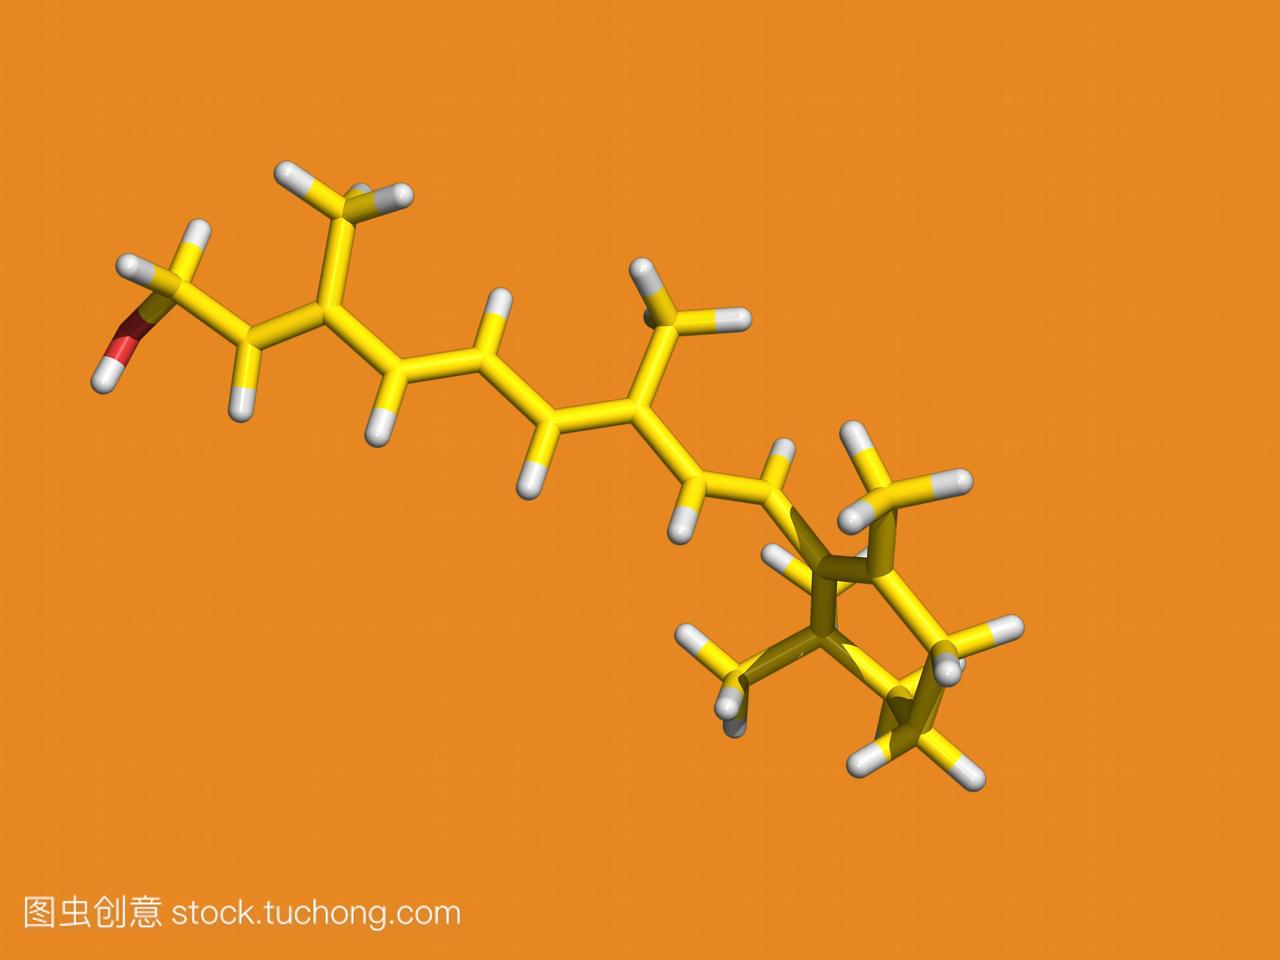 维生素a脂溶性维生素a分子的计算机模型视黄